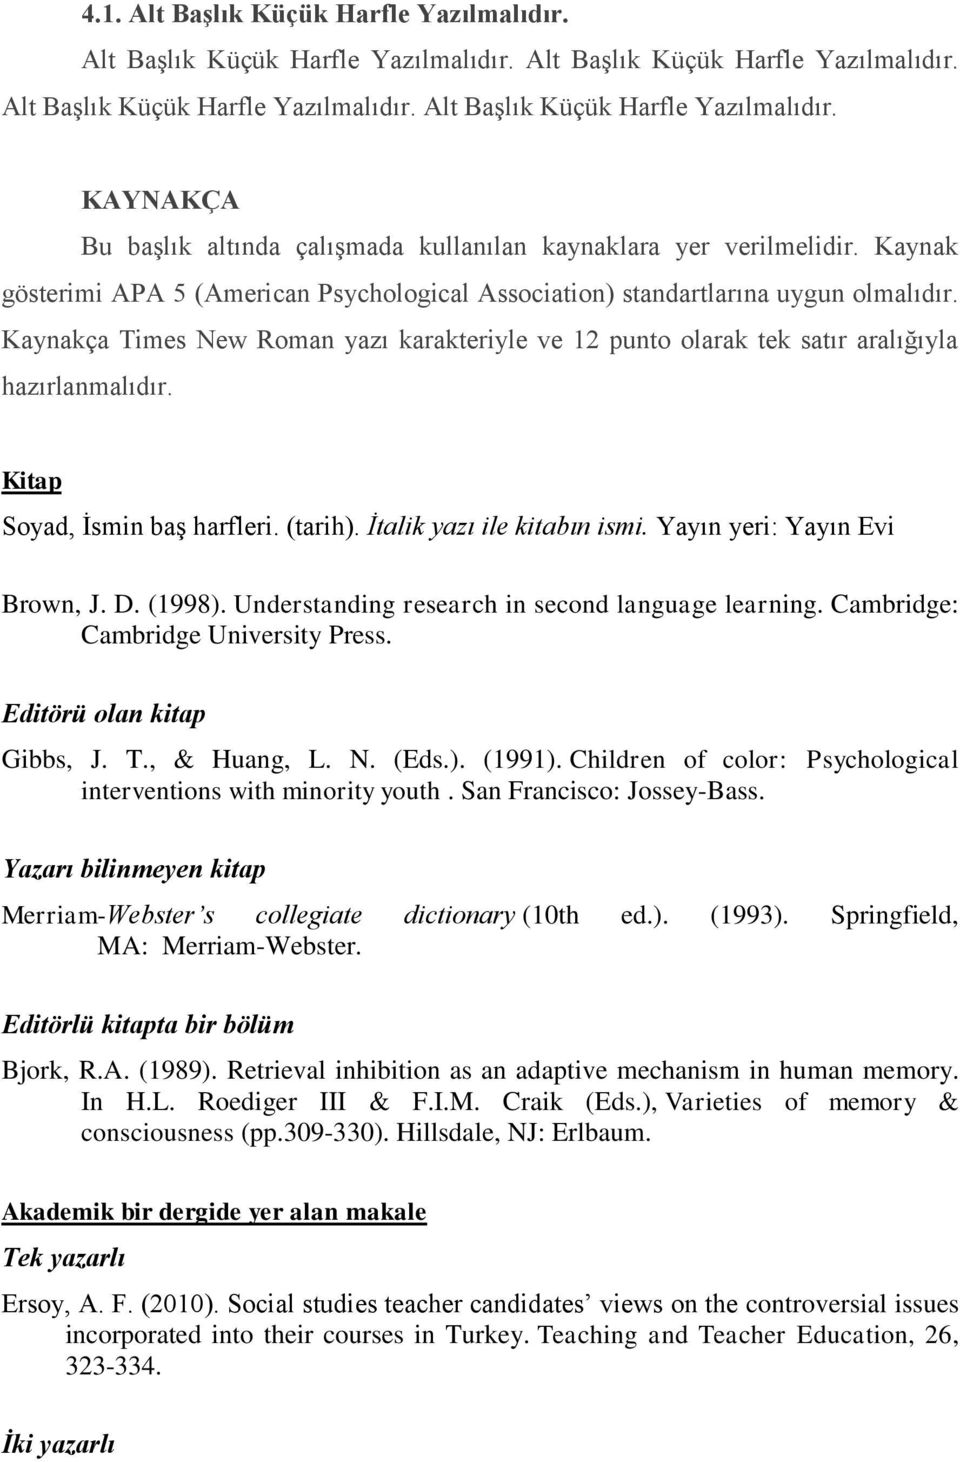 Kitap Soyad, İsmin baş harfleri. (tarih). İtalik yazı ile kitabın ismi. Yayın yeri: Yayın Evi Brown, J. D. (1998). Understanding research in second language learning.